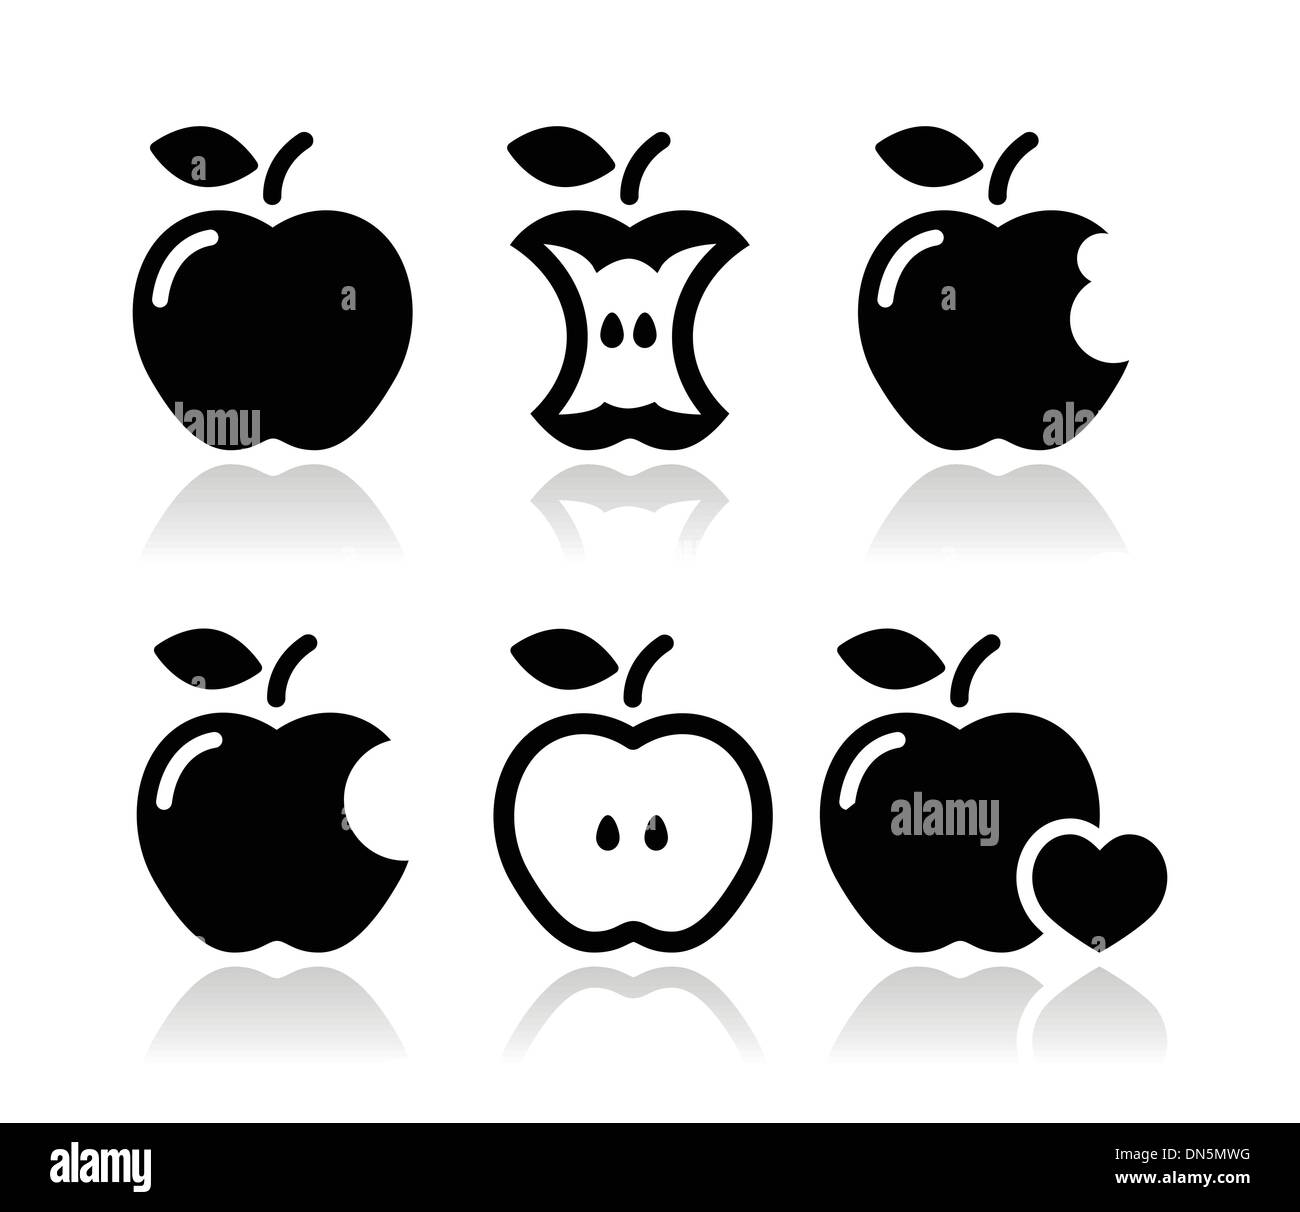 Apple, apple core, bitten, half vector icons Stock Vector